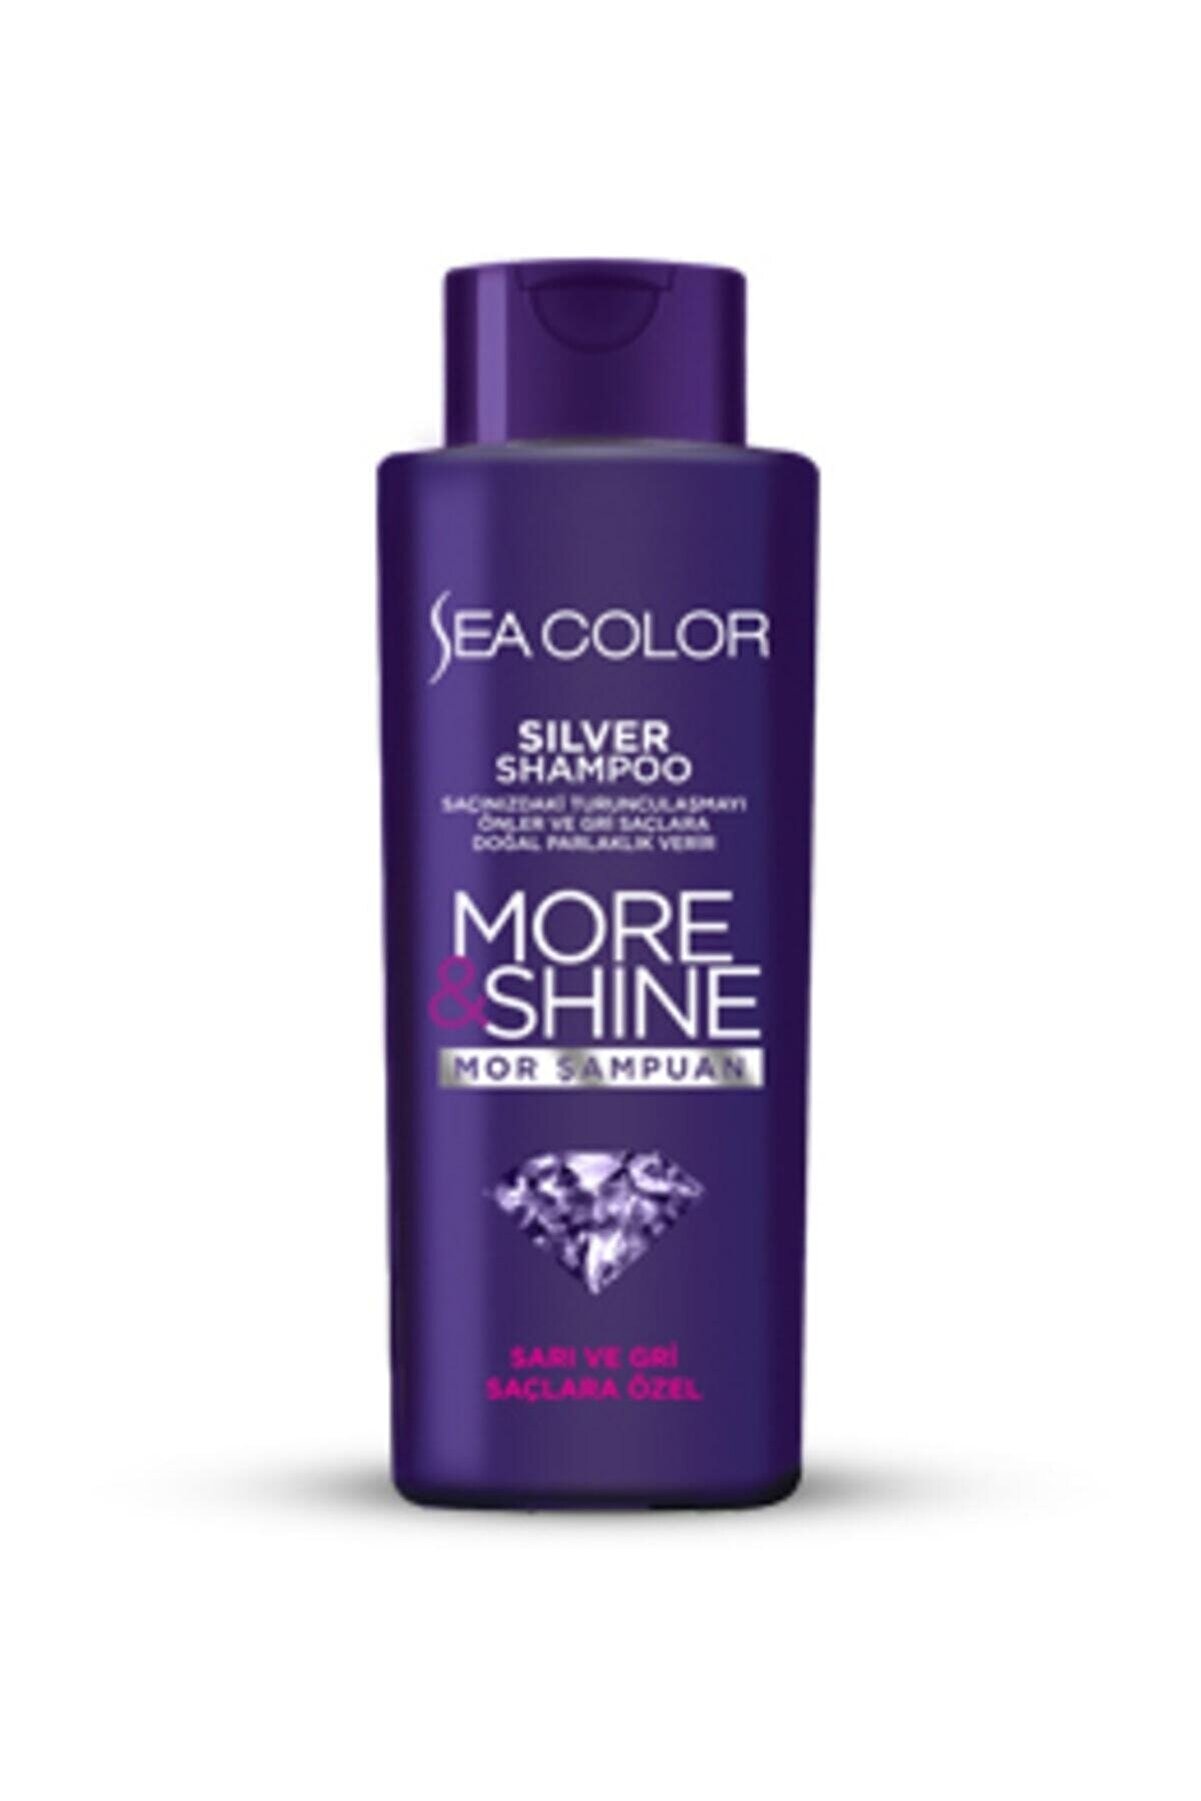 Sea Color Silver Shampoo Mor Şampuan  200 ml